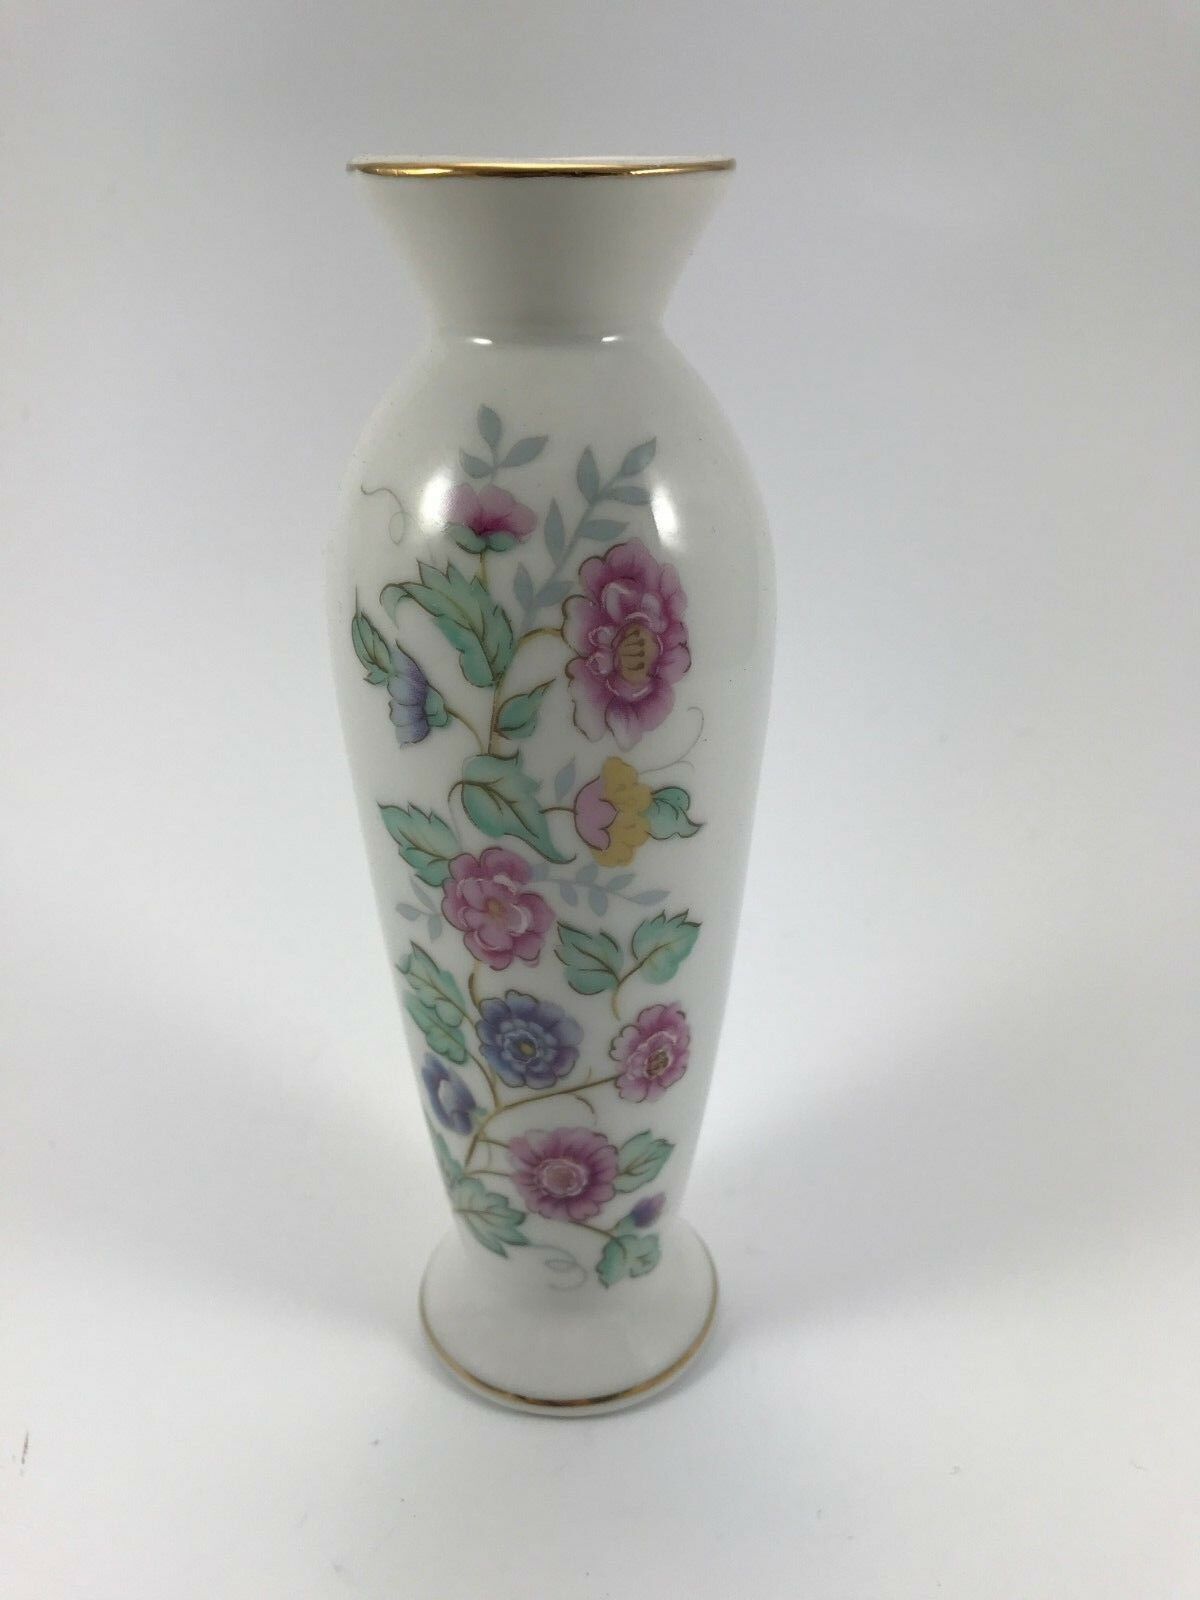 Vtg Norcrest White Porcelain Bud Vase Flowers & Gold - Orig Foil Label - Japan